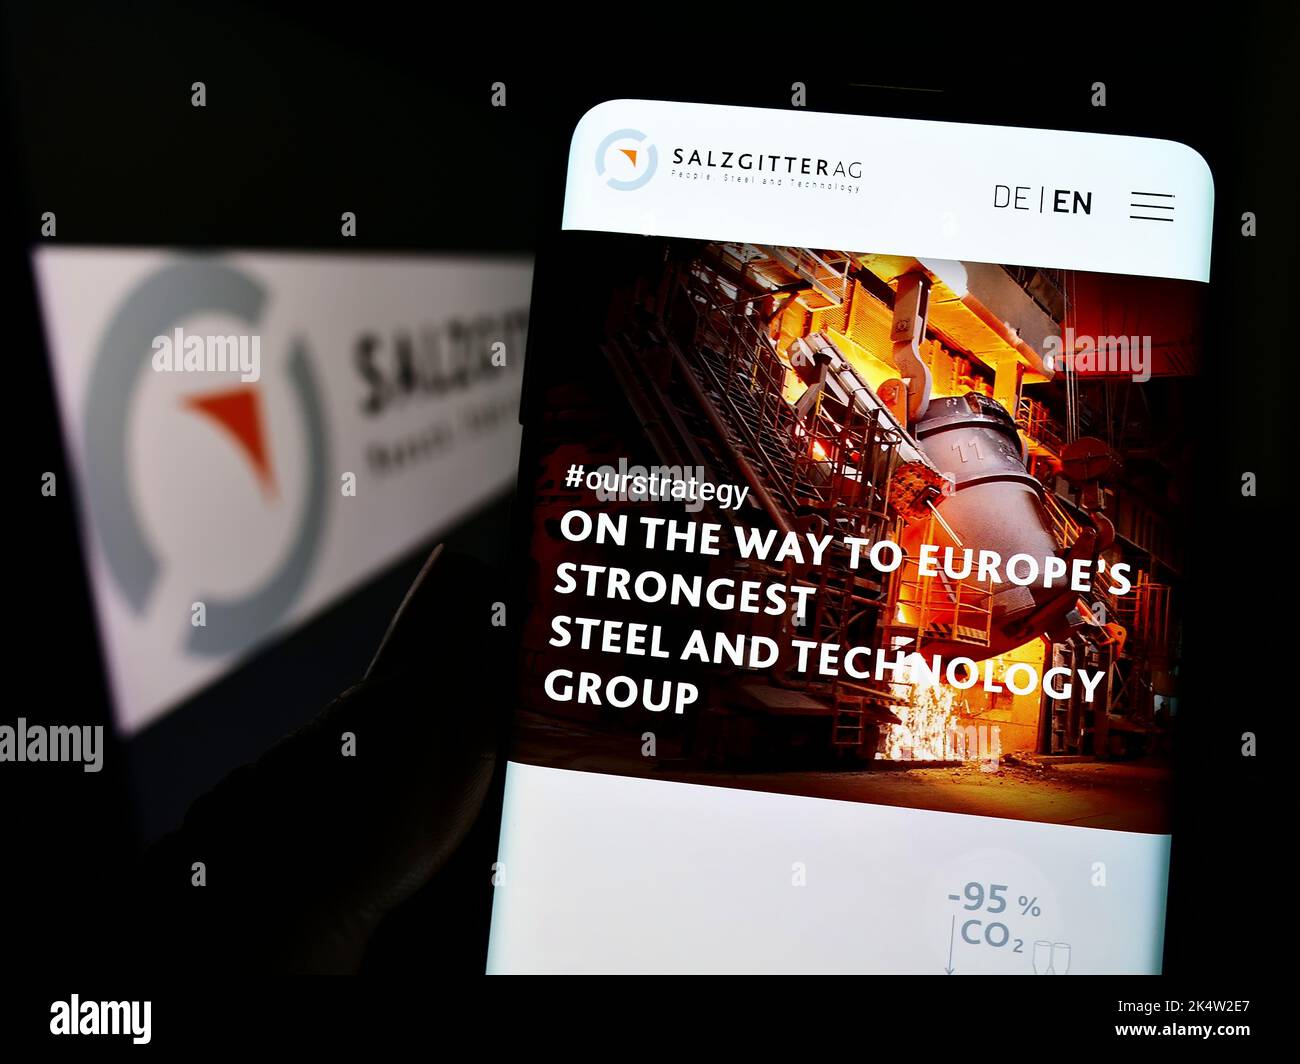 Persona che tiene il cellulare con la pagina web della società siderurgica tedesca Salzgitter AG sullo schermo di fronte al logo. Messa a fuoco al centro del display del telefono. Foto Stock